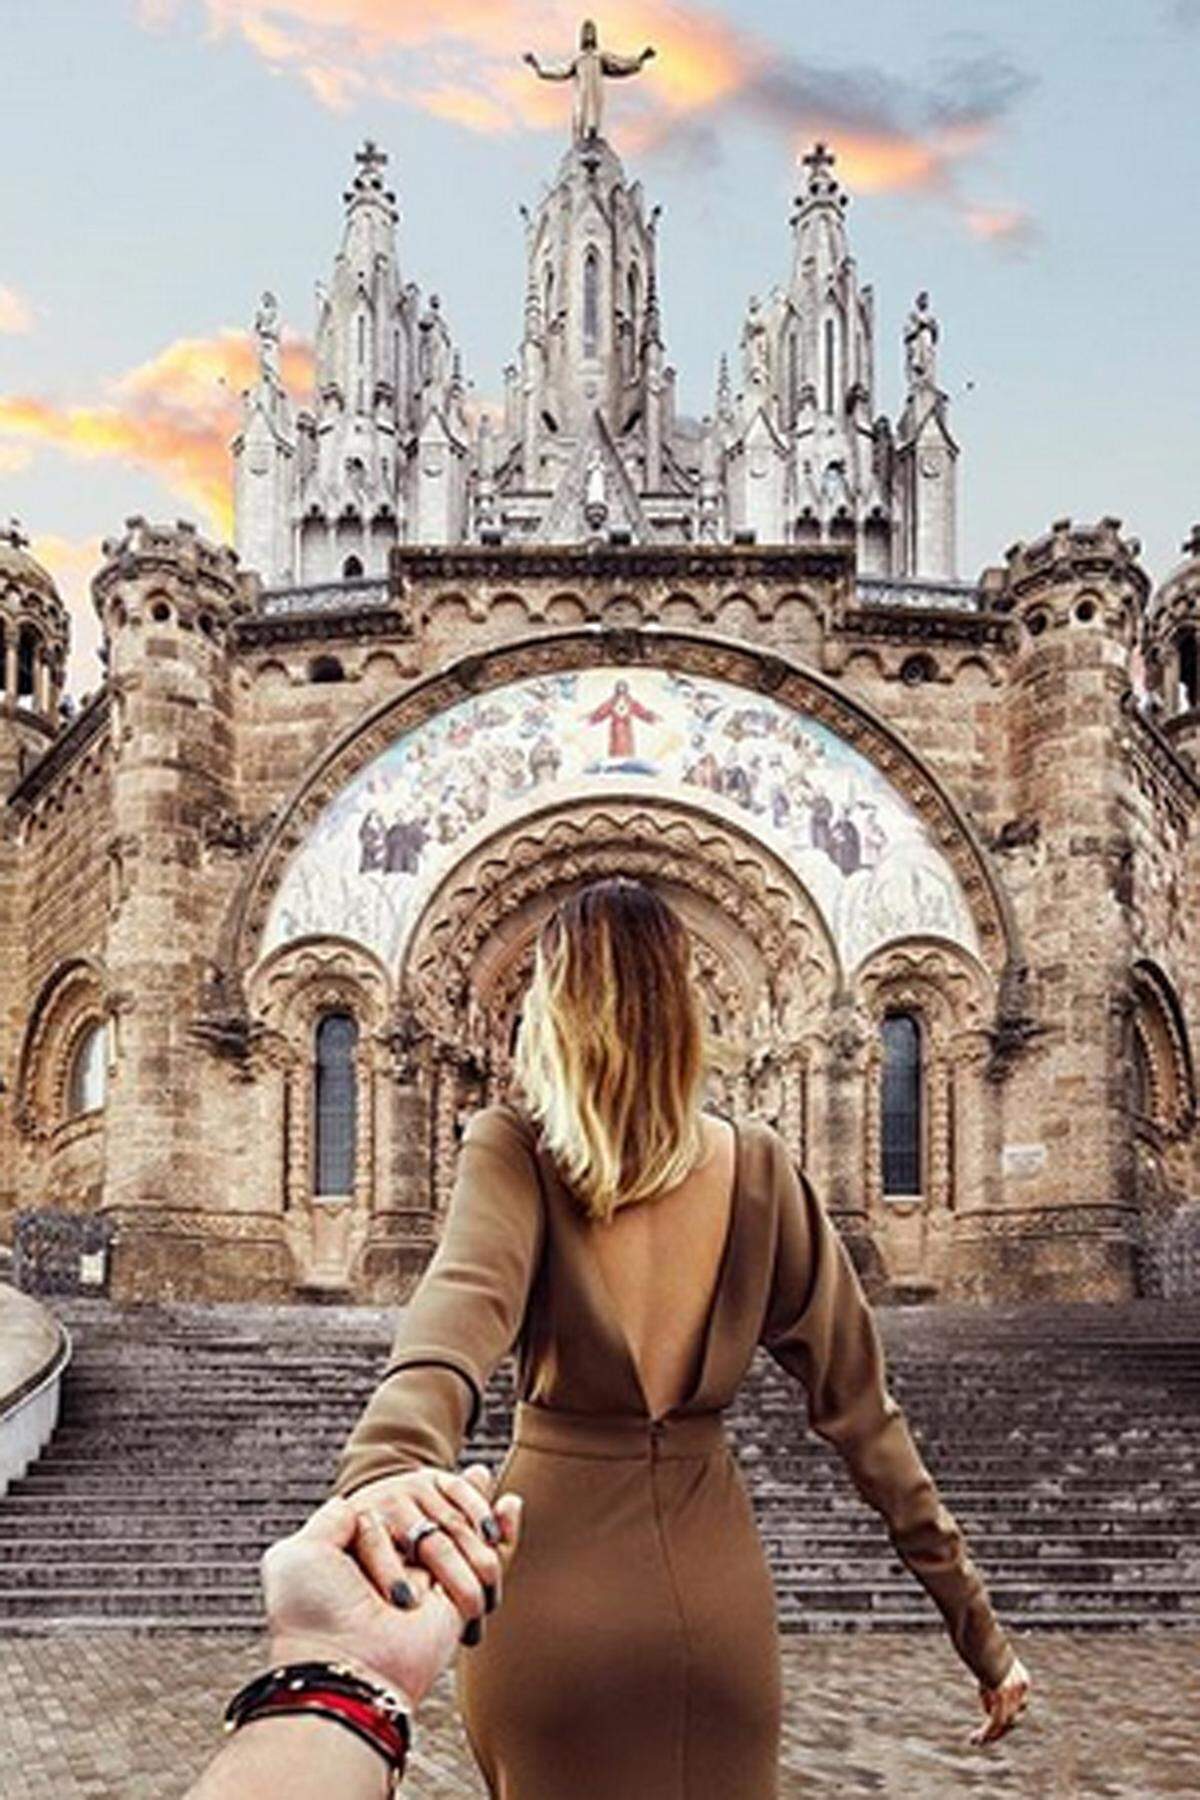 Sie war genervt, wollte ihn weiterziehen, er fotografierte den Moment. Auf dem Tibidabo, dem Hausberg Barcelonas.